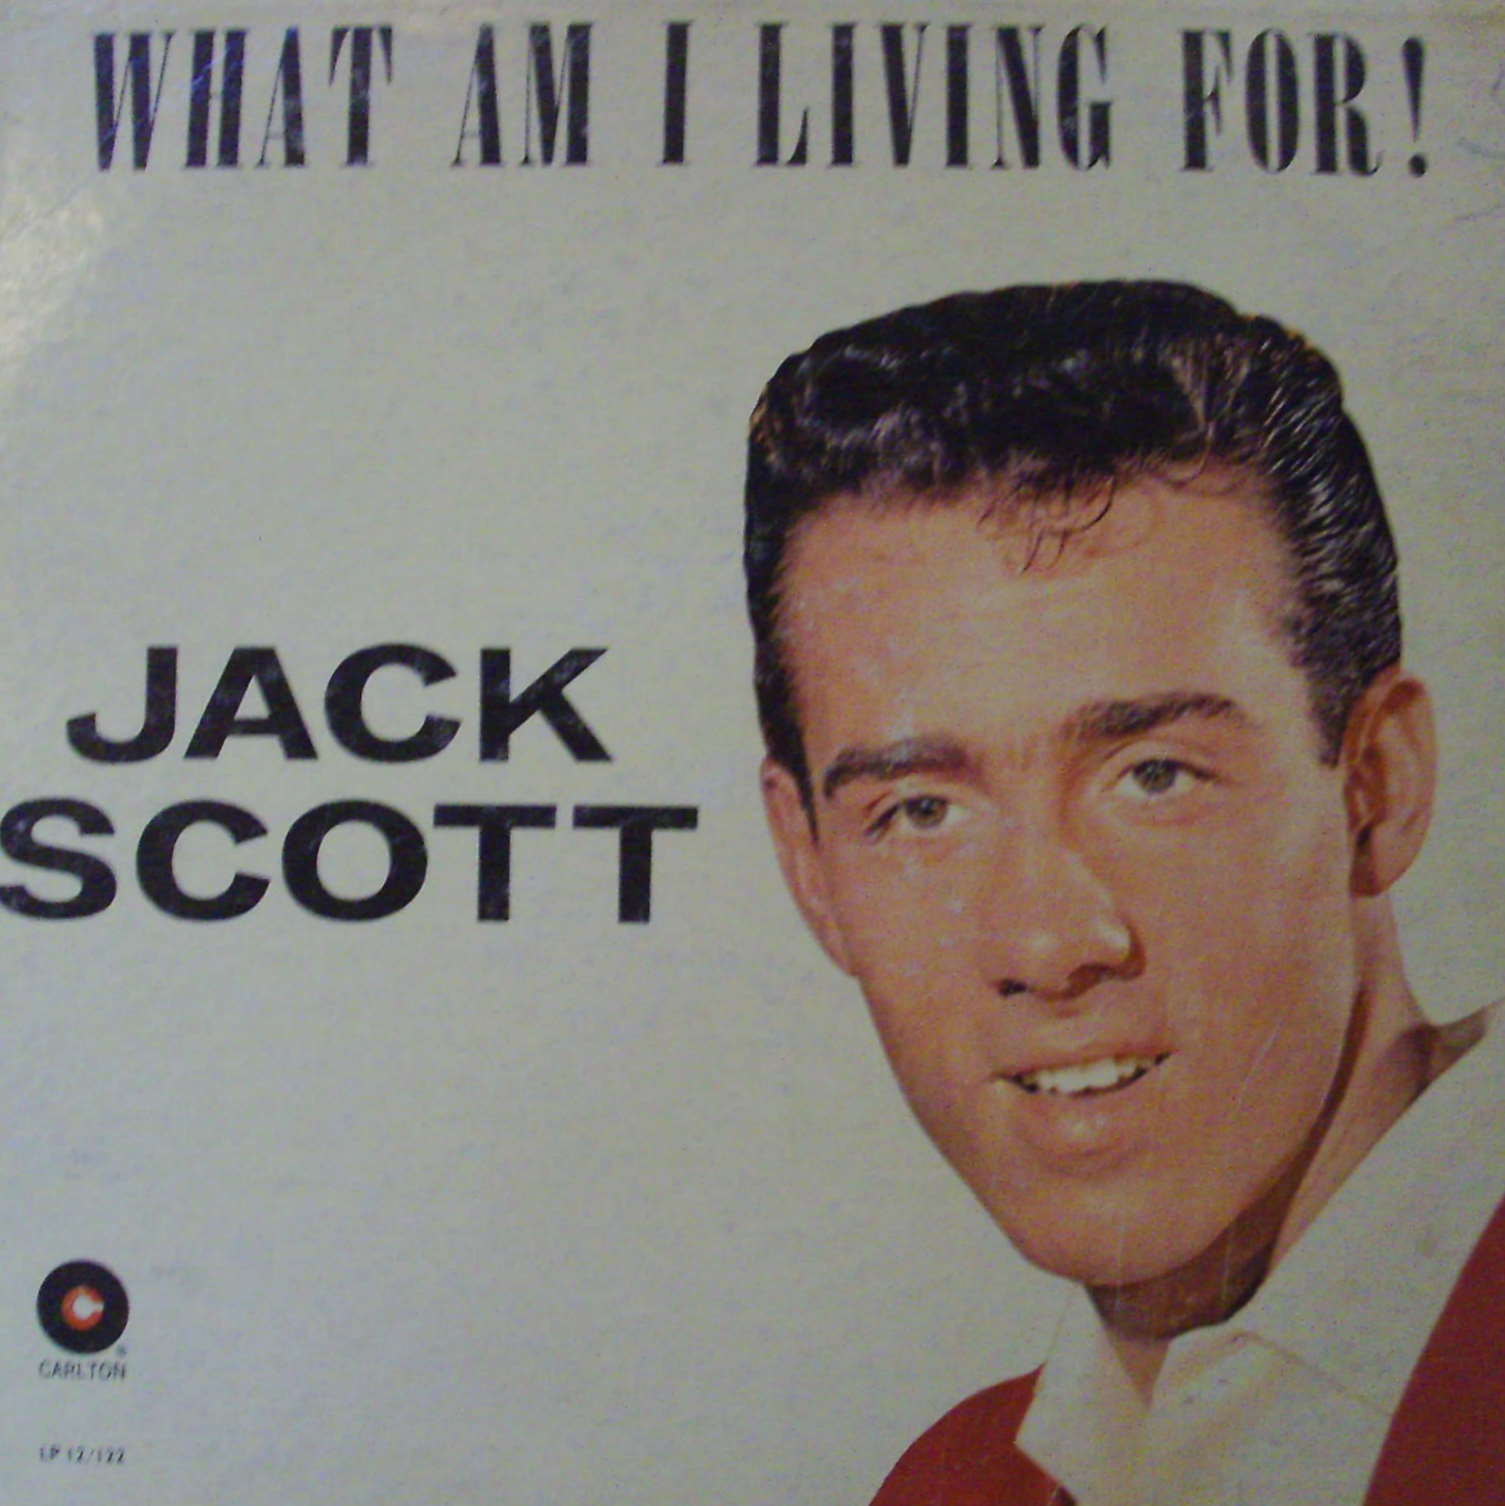 Jack Scott / What Am I Living For